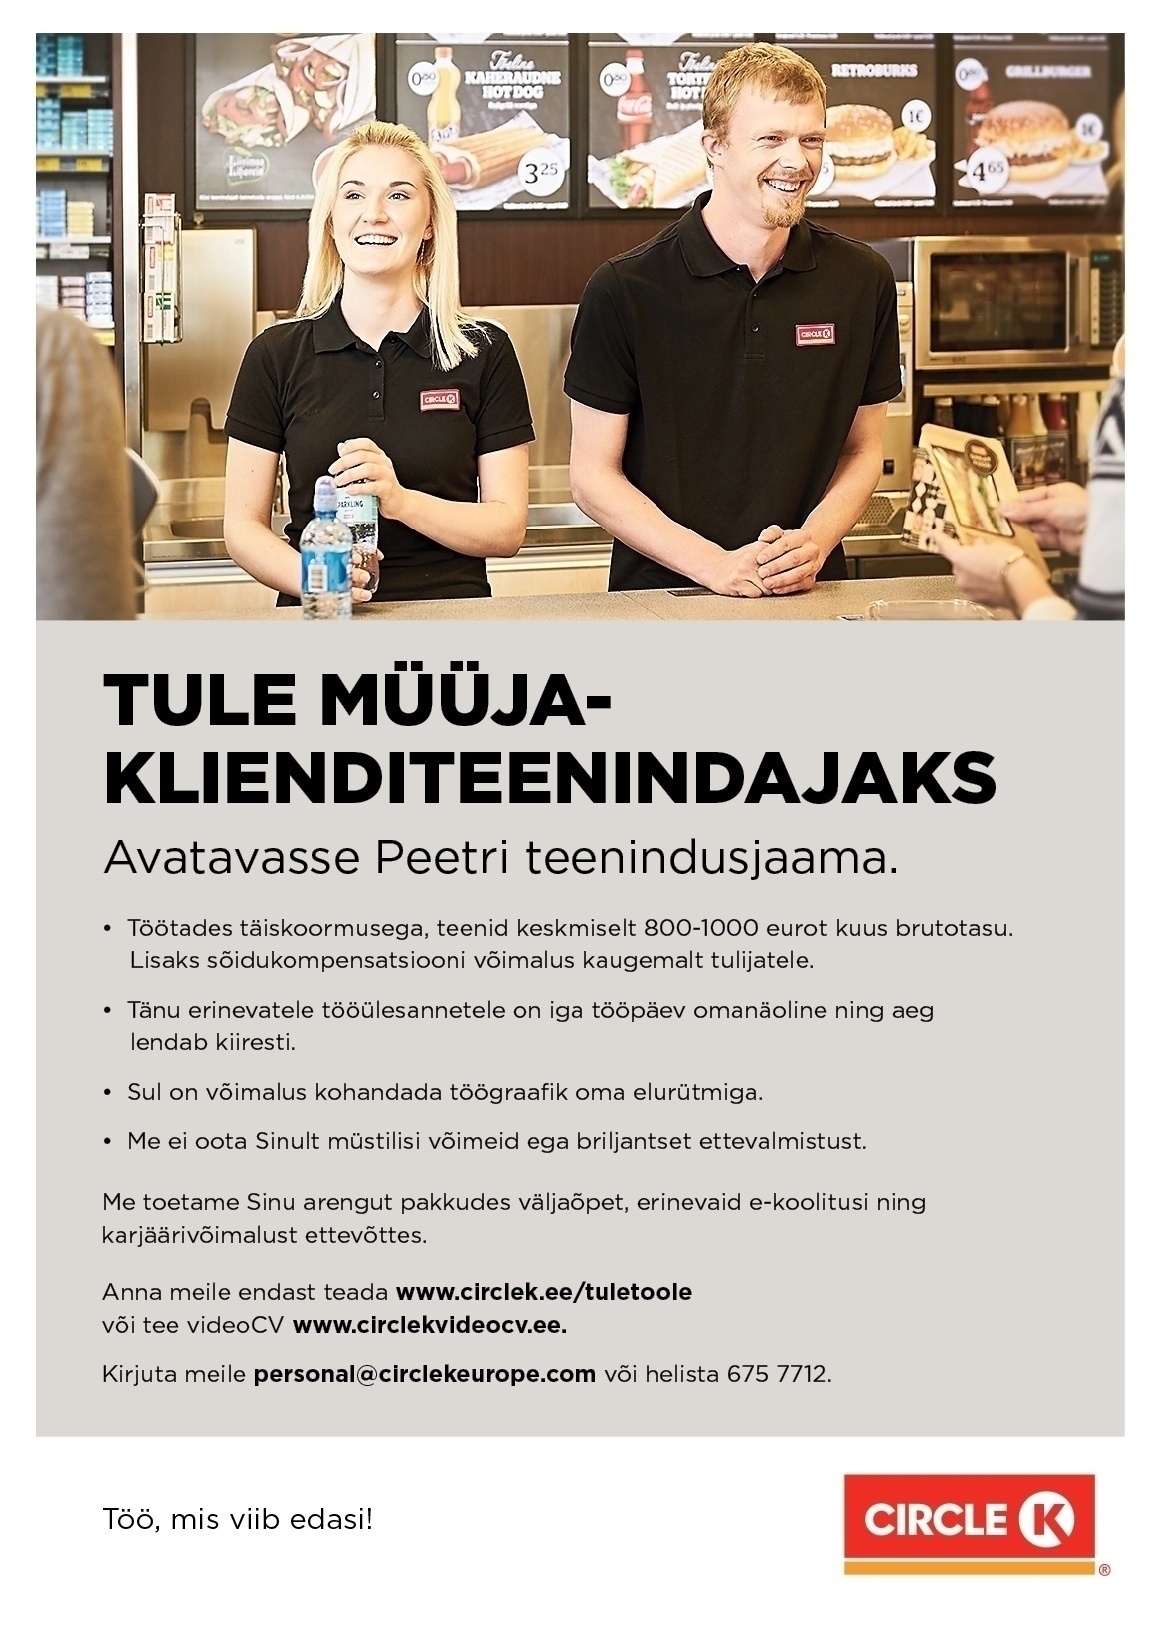 Circle K Eesti AS Müüja-klienditeenindaja avatavasse Peetri teenindusjaama